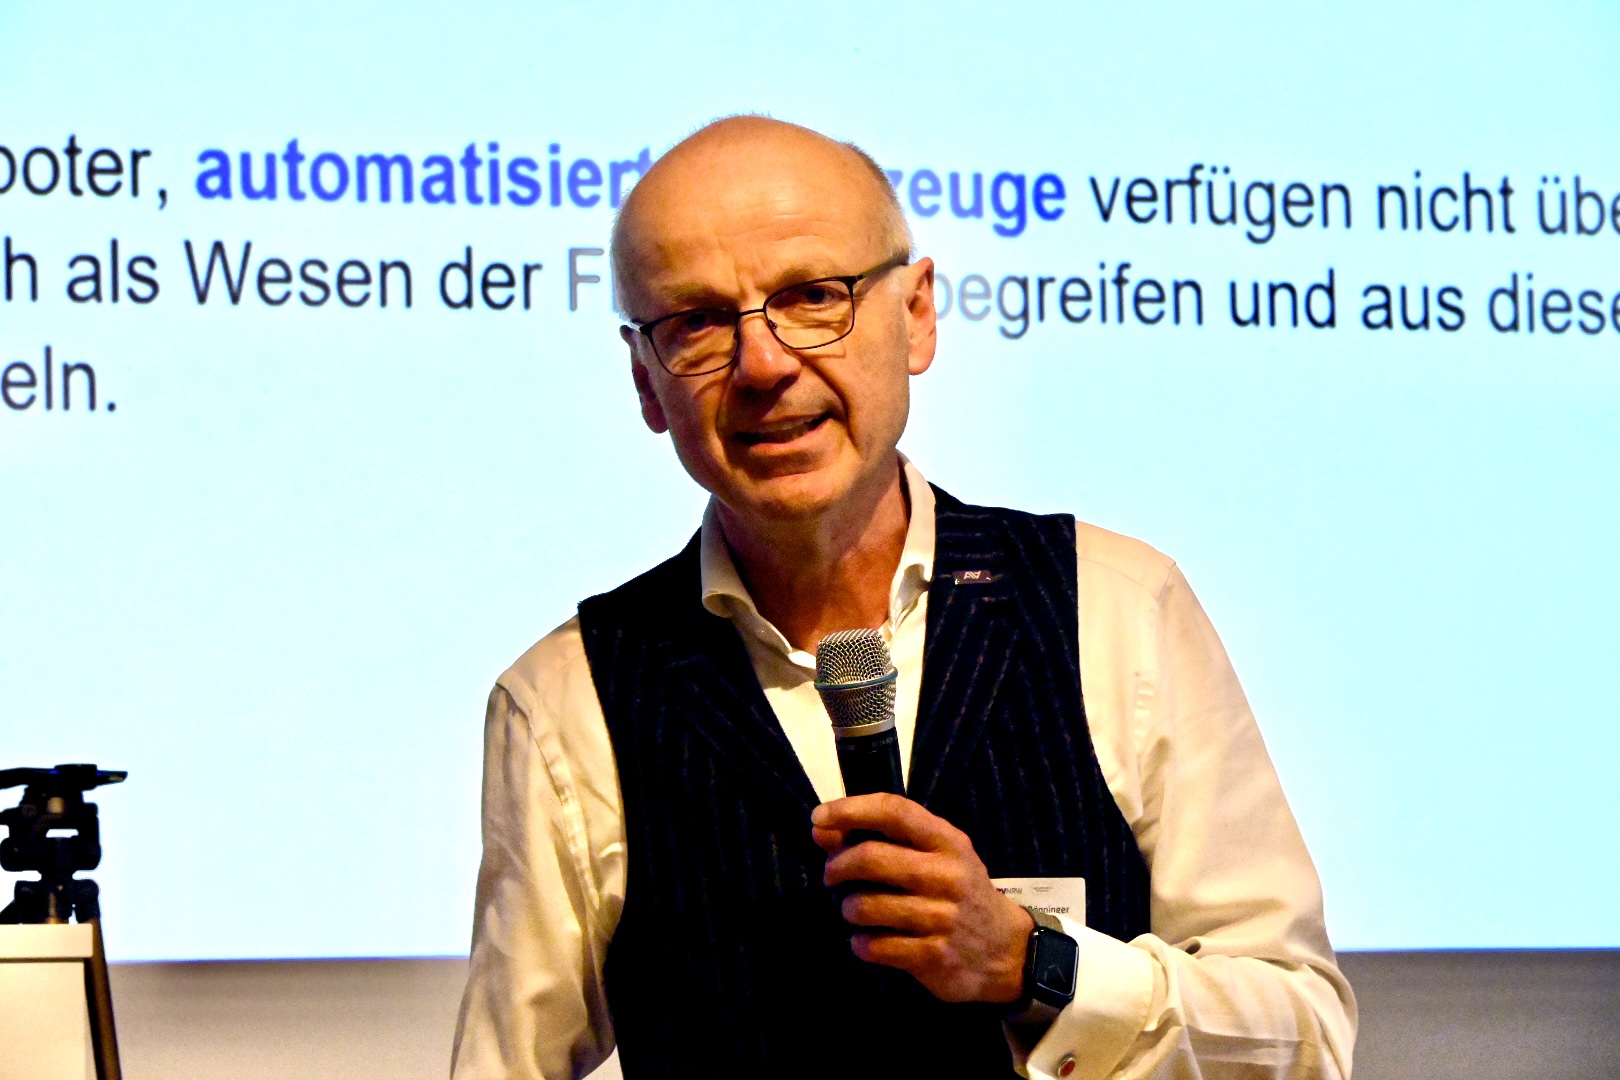 Dr.-Ing. Jürgen Bönninger: Automatisiertes Fahren muss menschliche Leistung übertreffen.